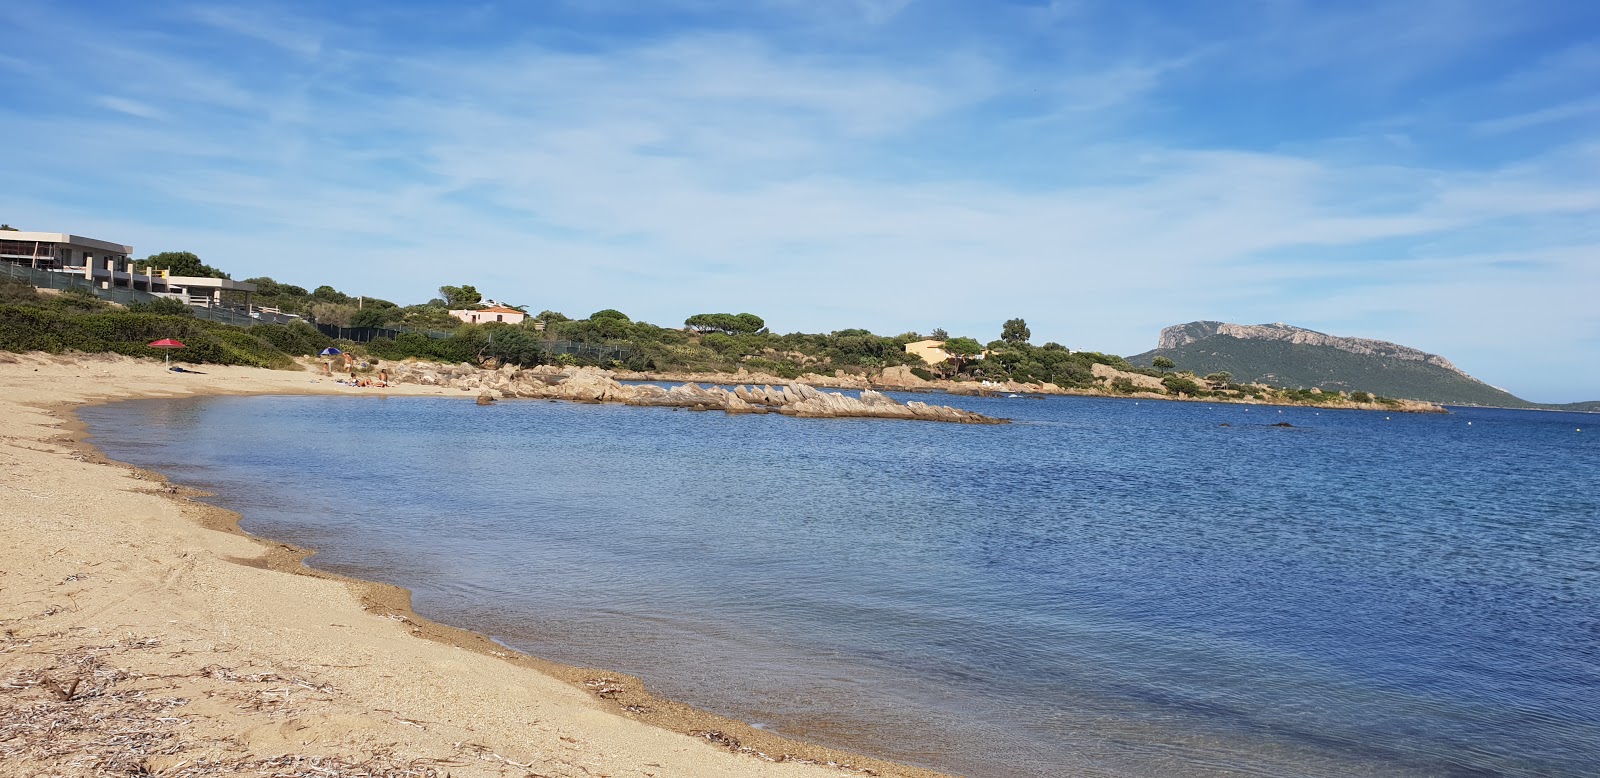 Photo of Spiaggia S'abba e sa Pedra with small bay